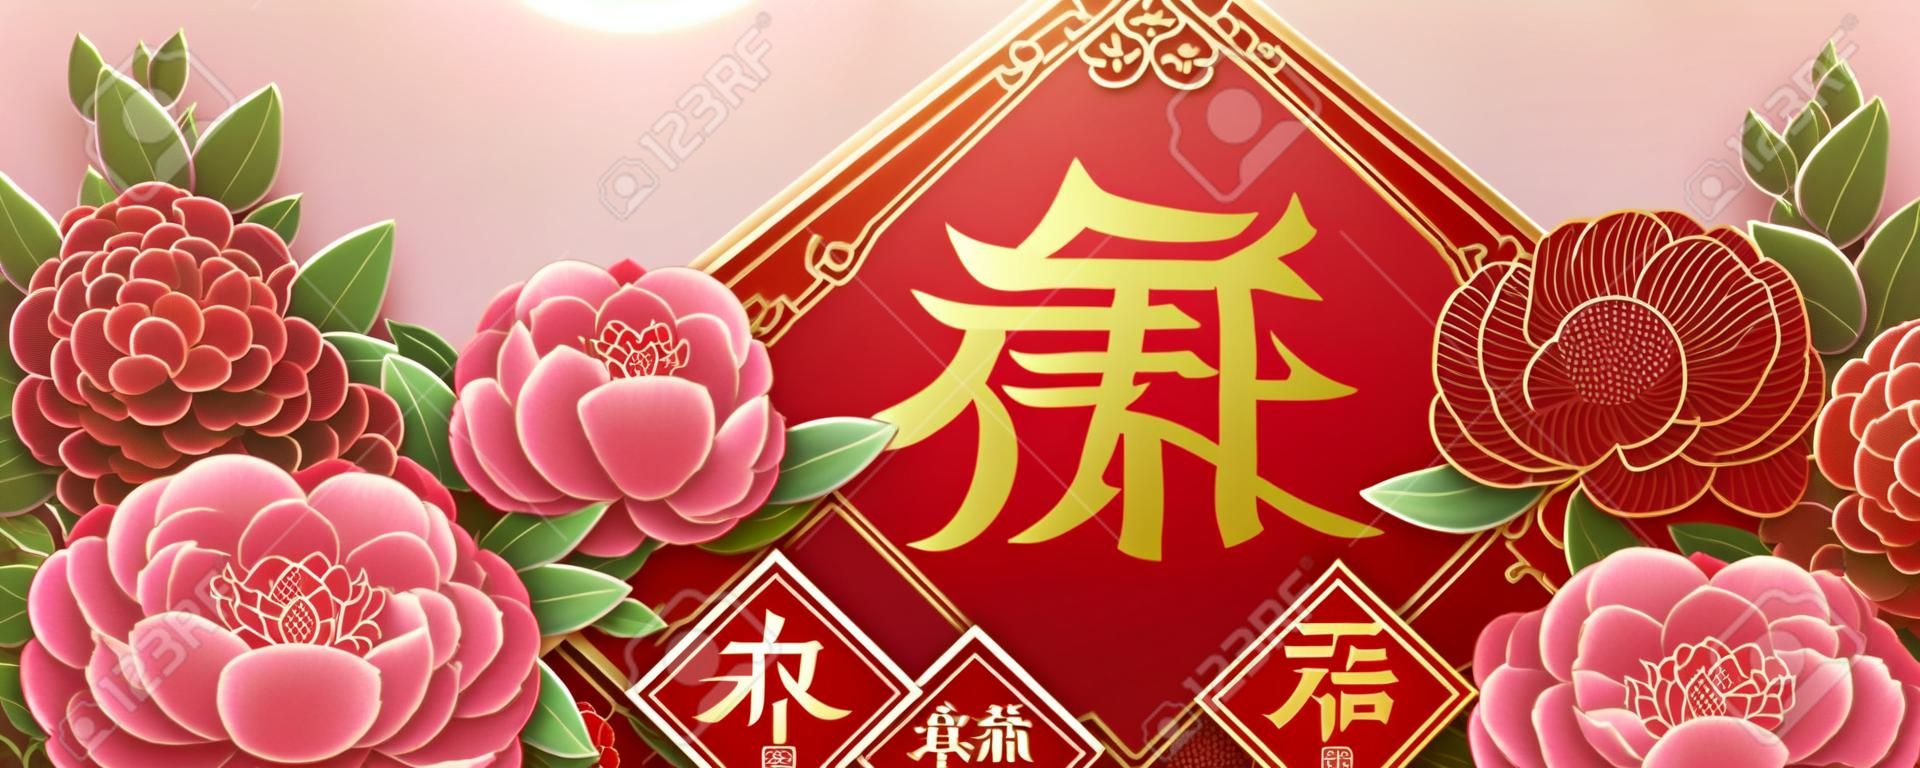 Maanjaar ontwerp met prachtige pioenbloemen, Lente geschreven in Chinees woord in het midden